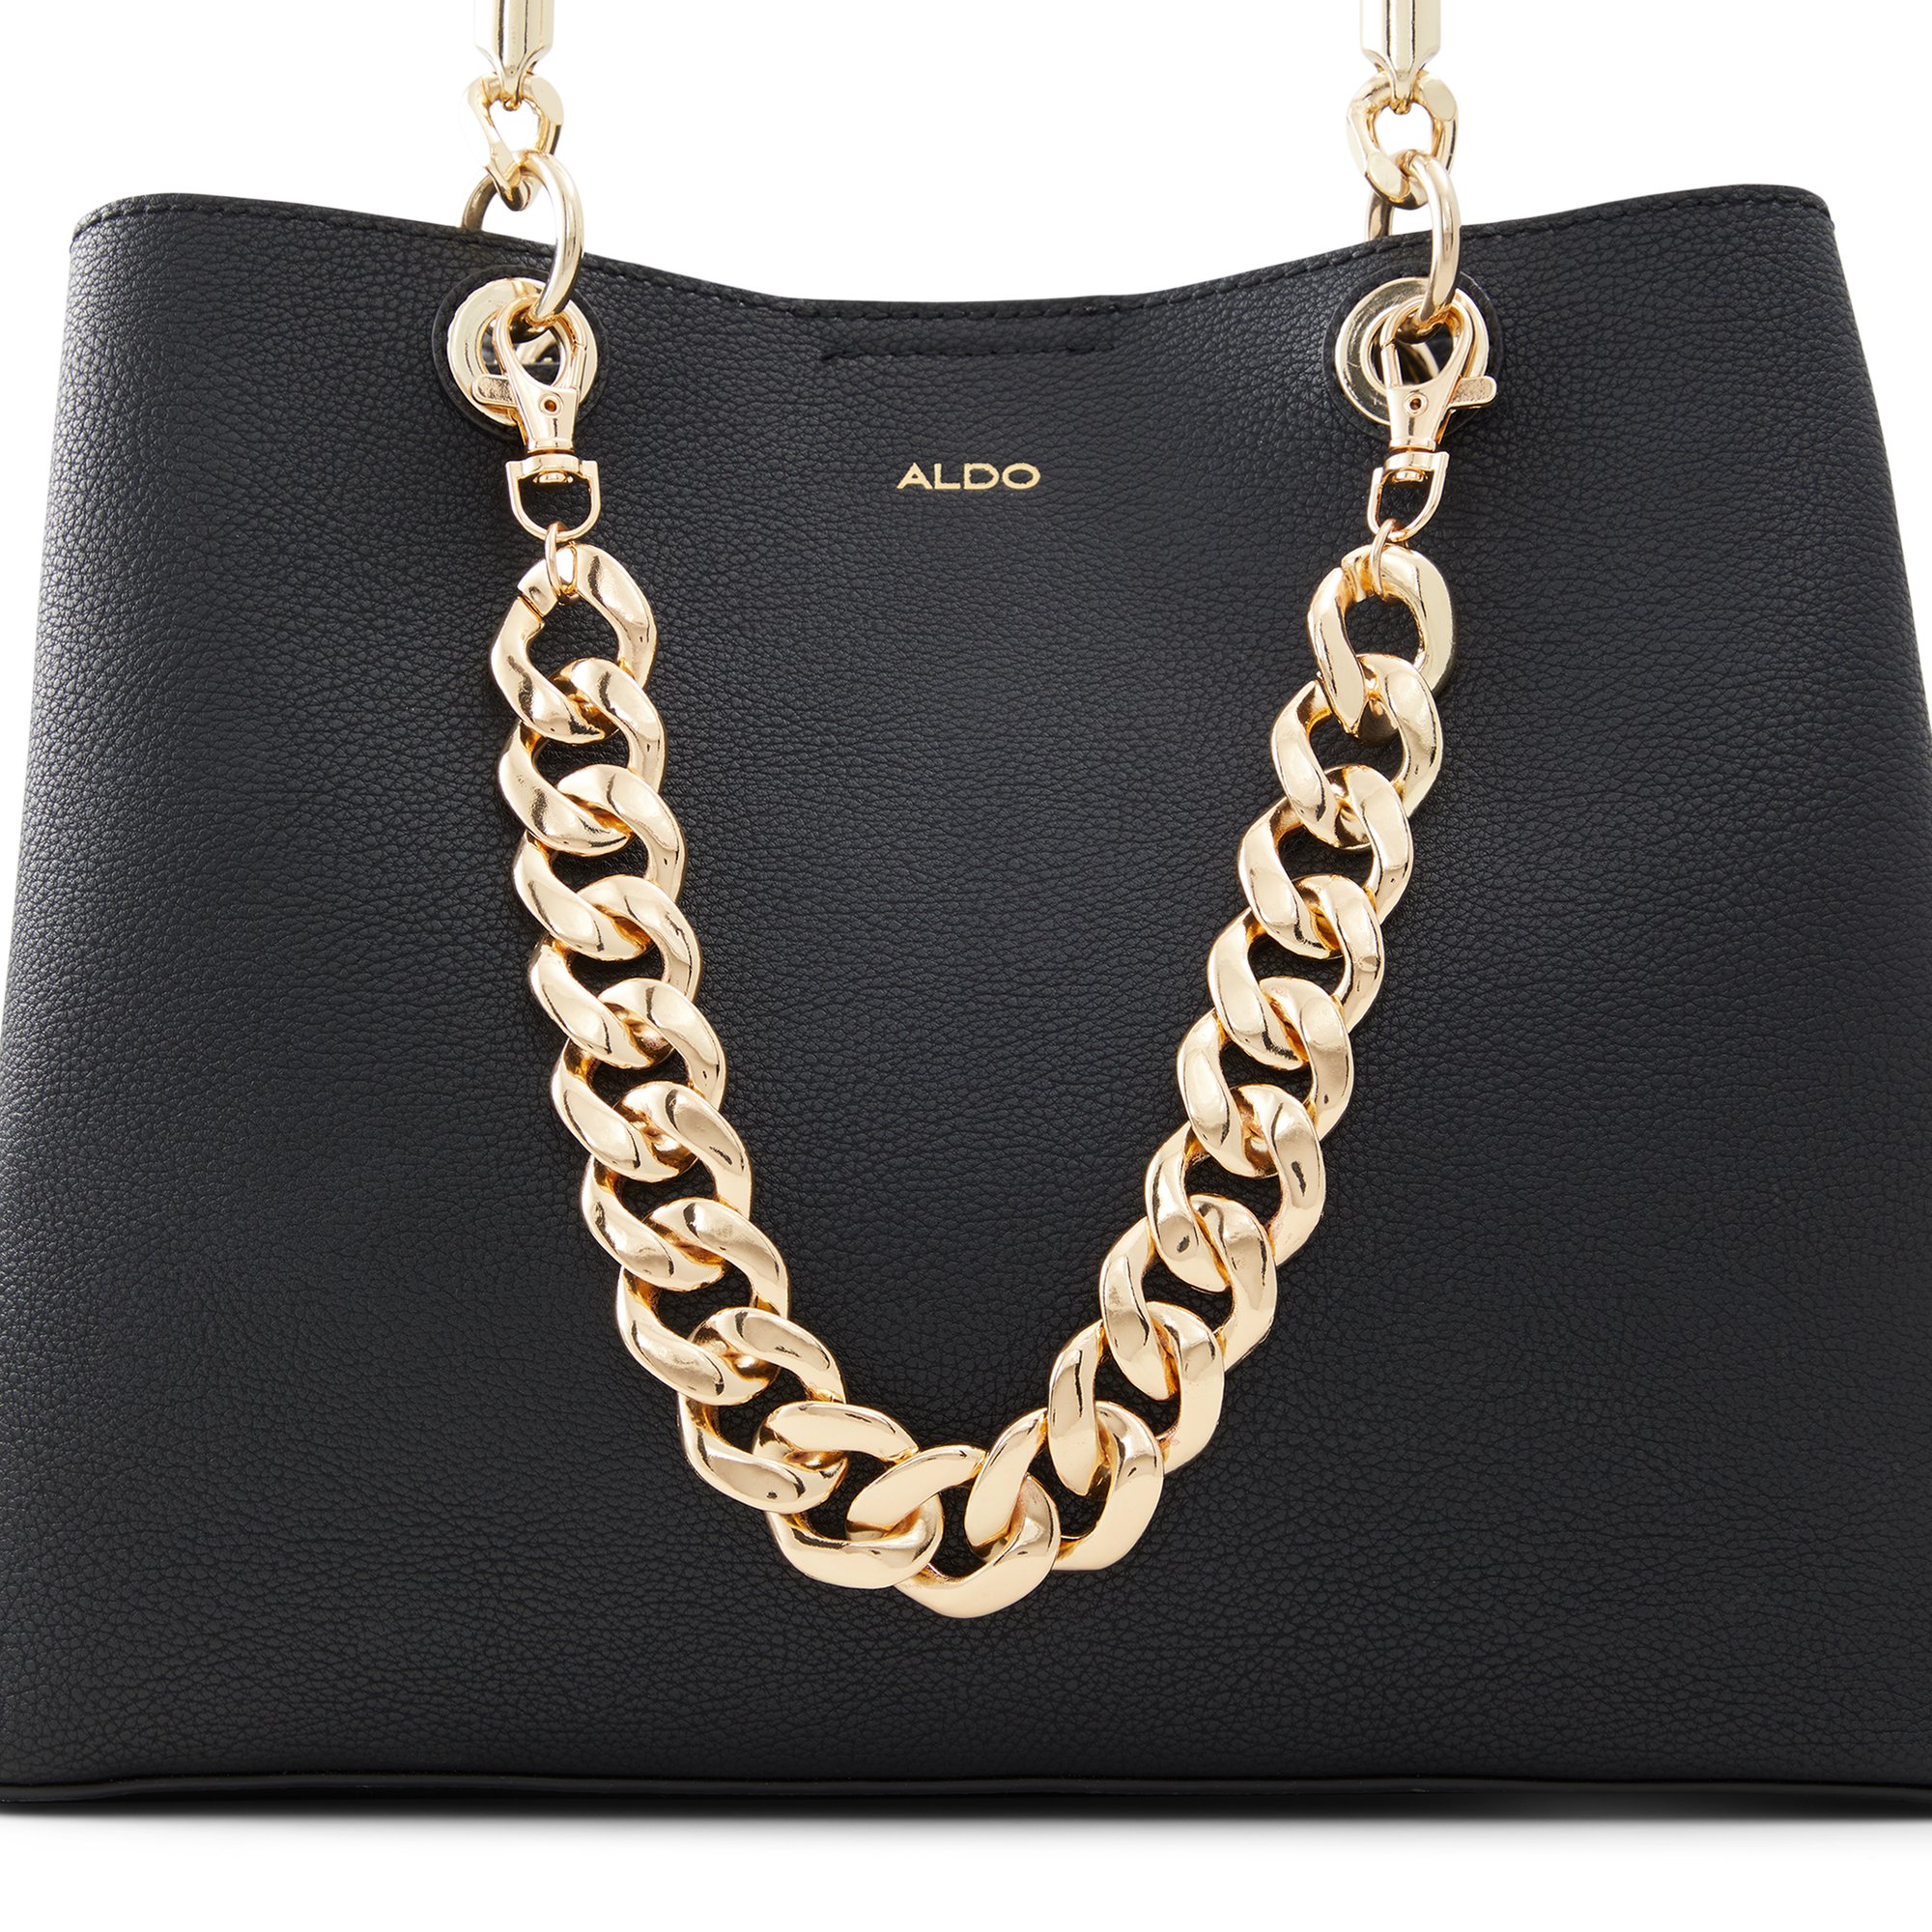 Image of ALDO Sevaniel - Women's Bag Charm - Gold